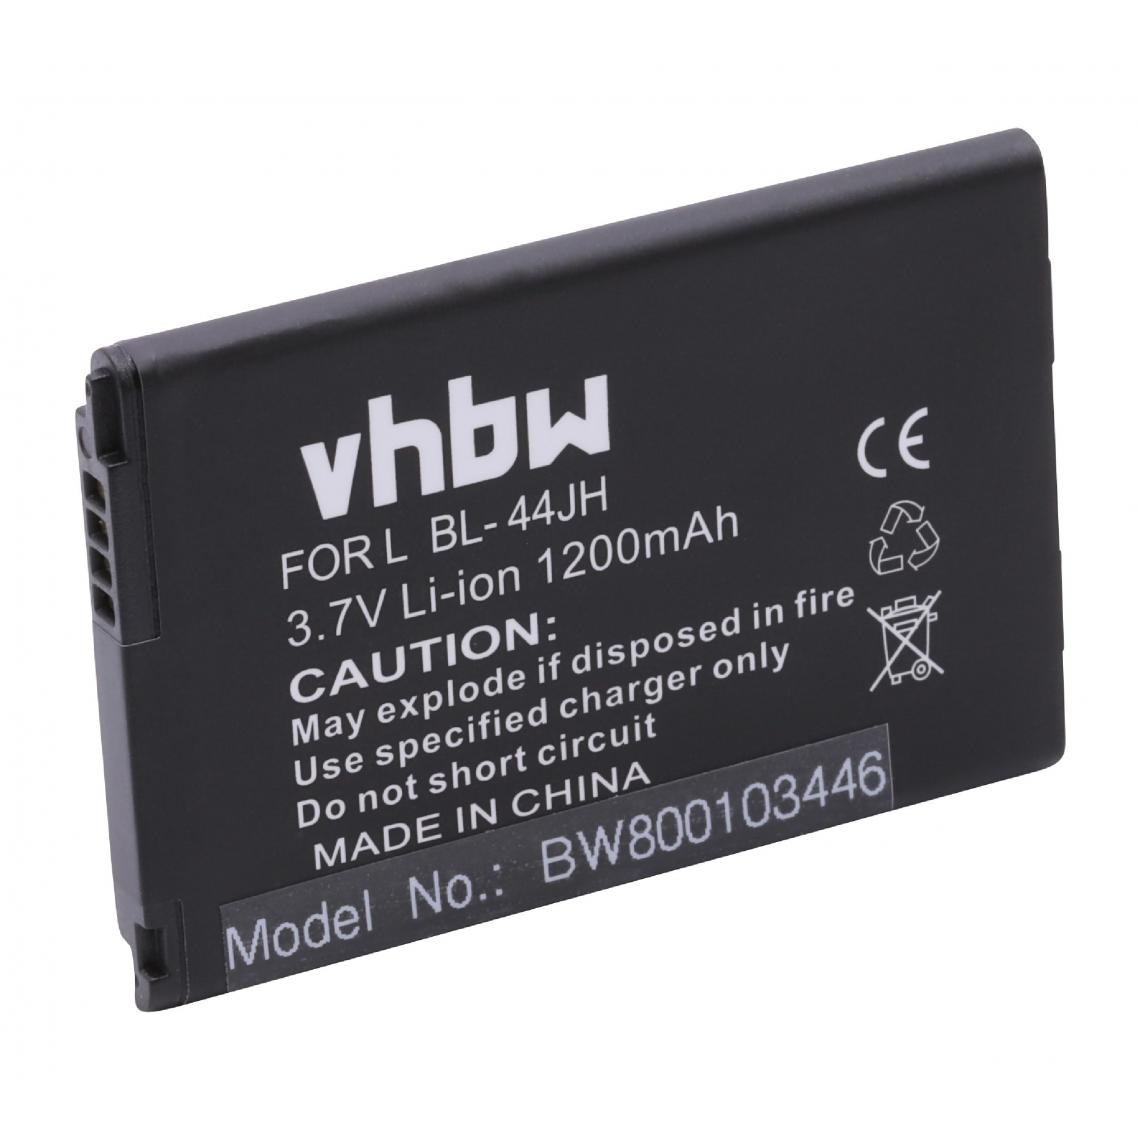 Vhbw - vhbw Batterie compatible avec LG Optimus Regard, Optimus Zone 2, P700 Optimus, P705G Optimus smartphone (1200mAh, 3,7V, Li-ion) - Batterie téléphone